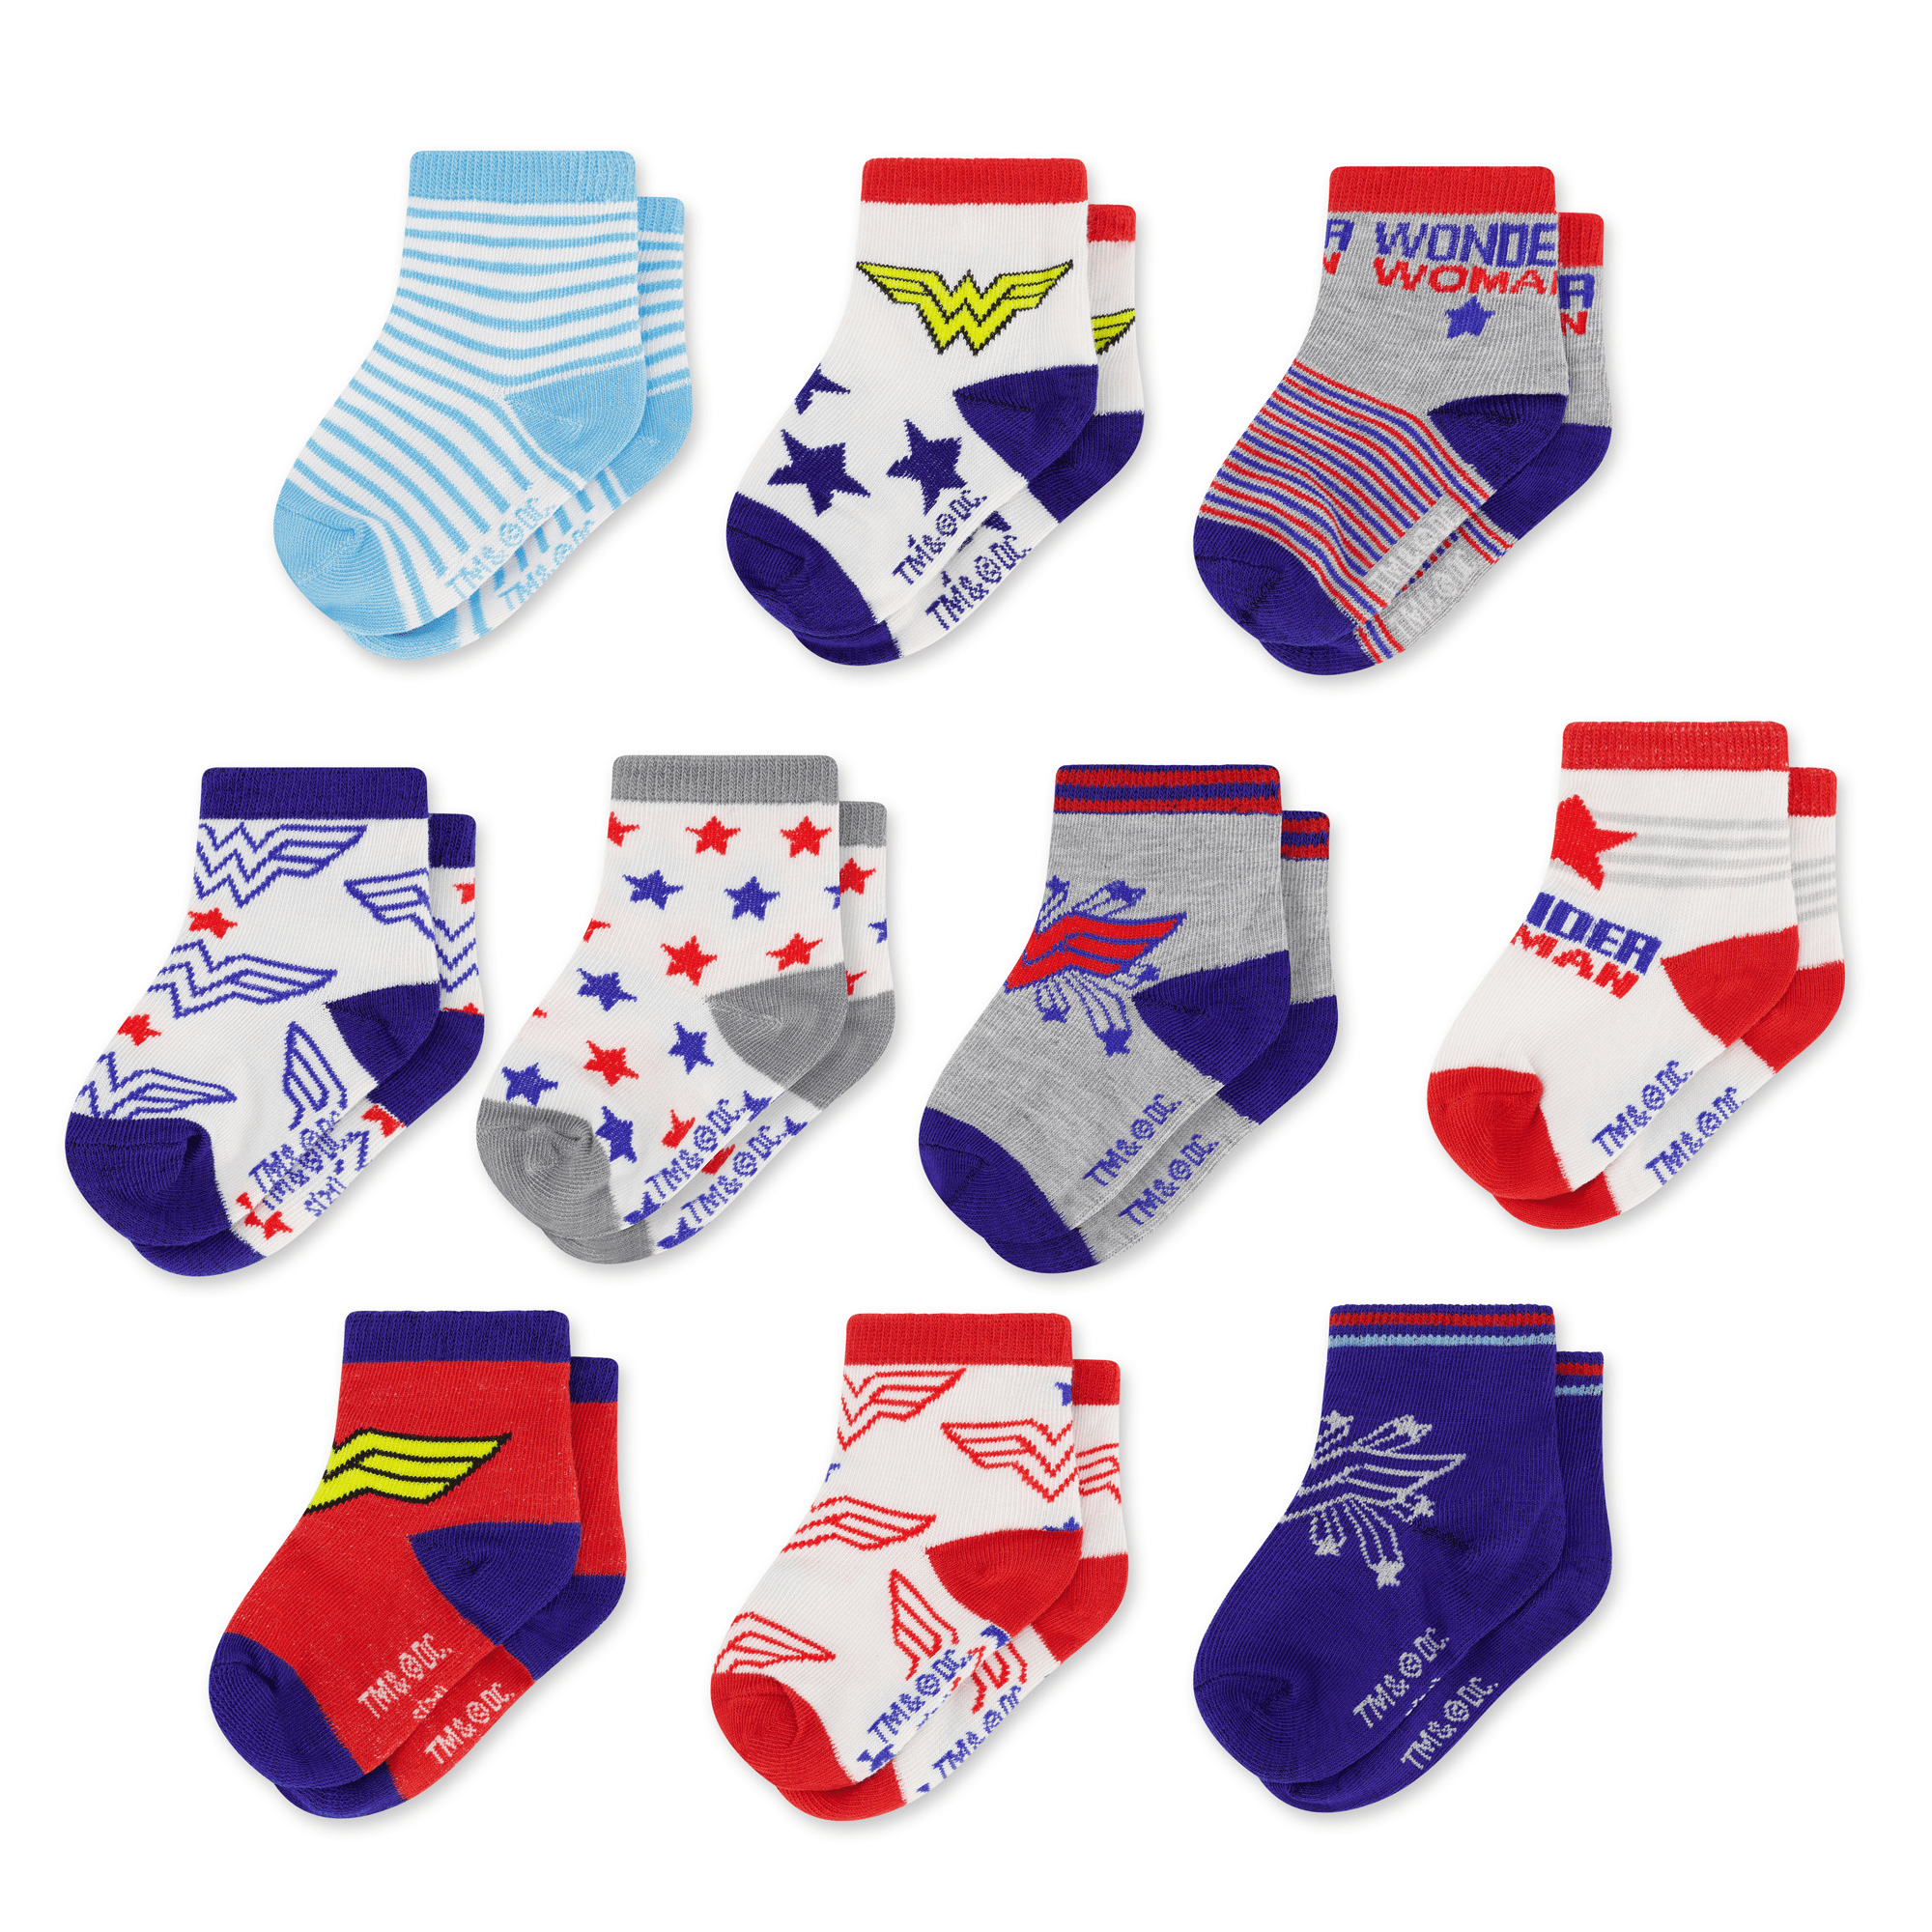 Baby socks Newborn Boys and Girls: Unisex 12 Pairs Cotton Multipack 